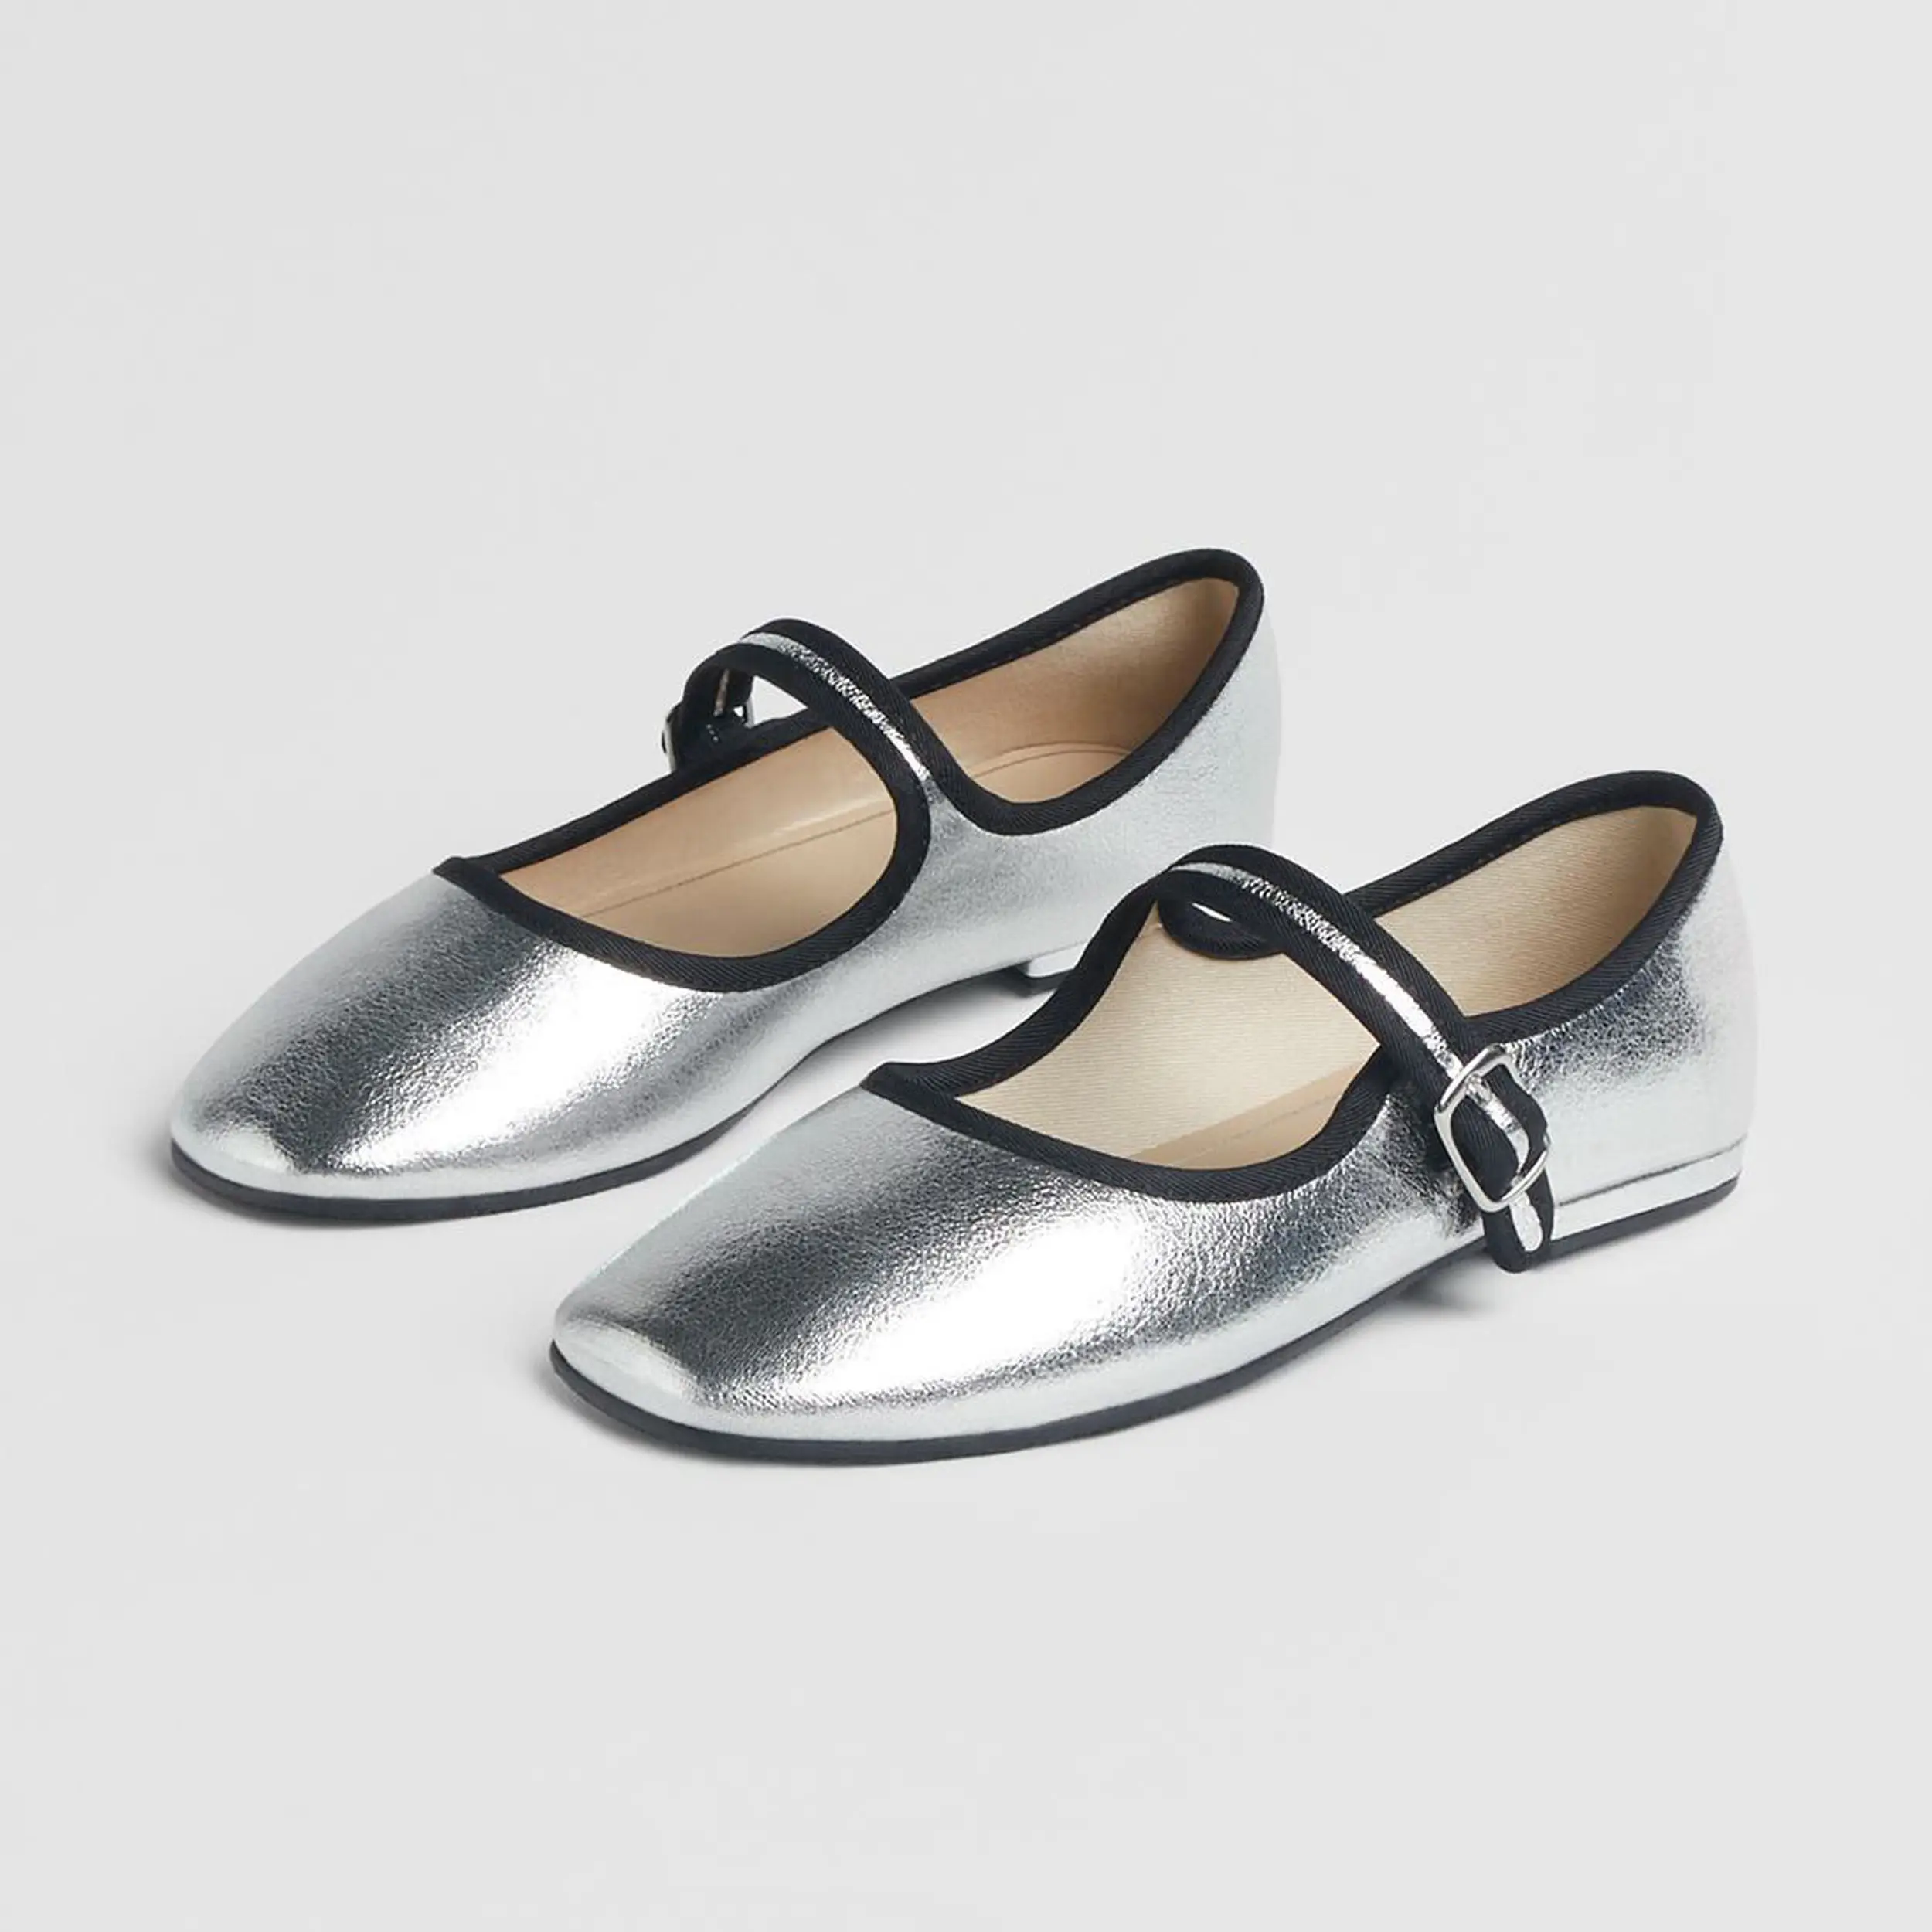 Kadın moda yürüyüş ayakkabısı bale daireler rahat bayan rahat elbise loafer'lar gümüş üzerinde kayma düz Mary Jane pompaları